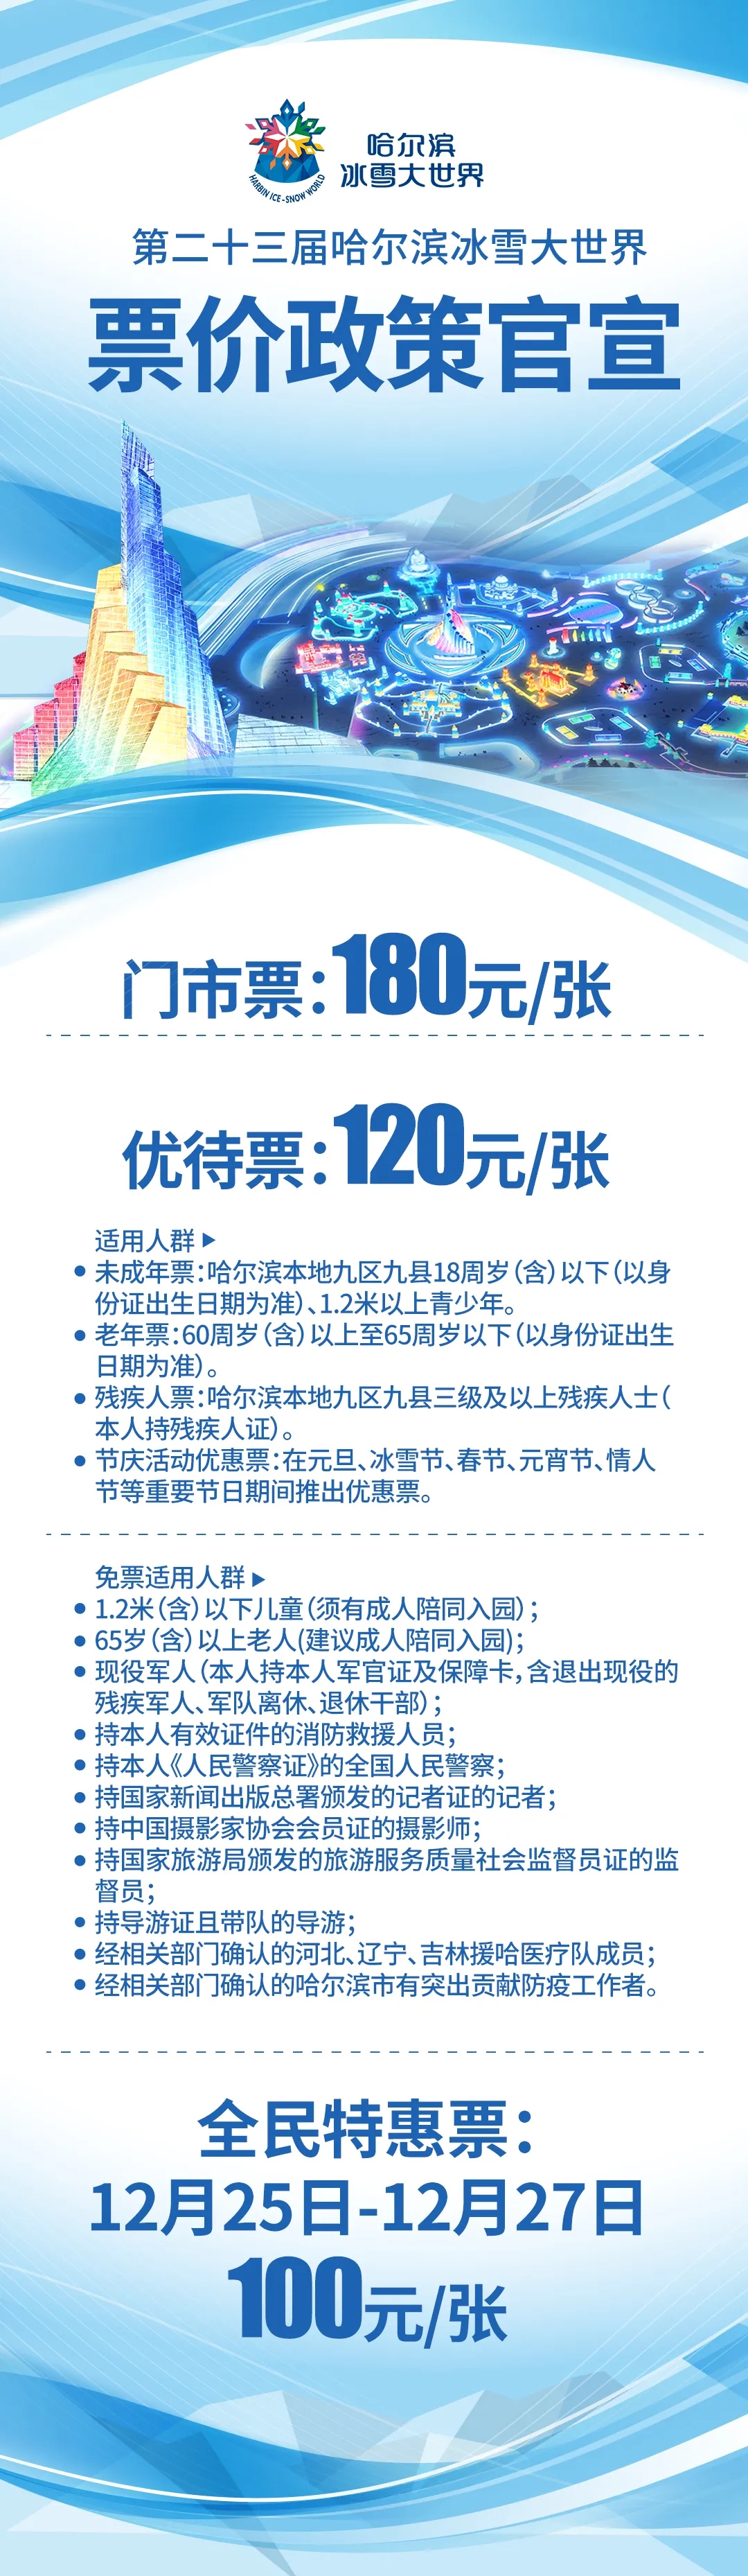 12月25日第二十三届哈尔滨冰雪大世界开园 25日至27日全民特惠票100元/人_fororder_640.webp (2)